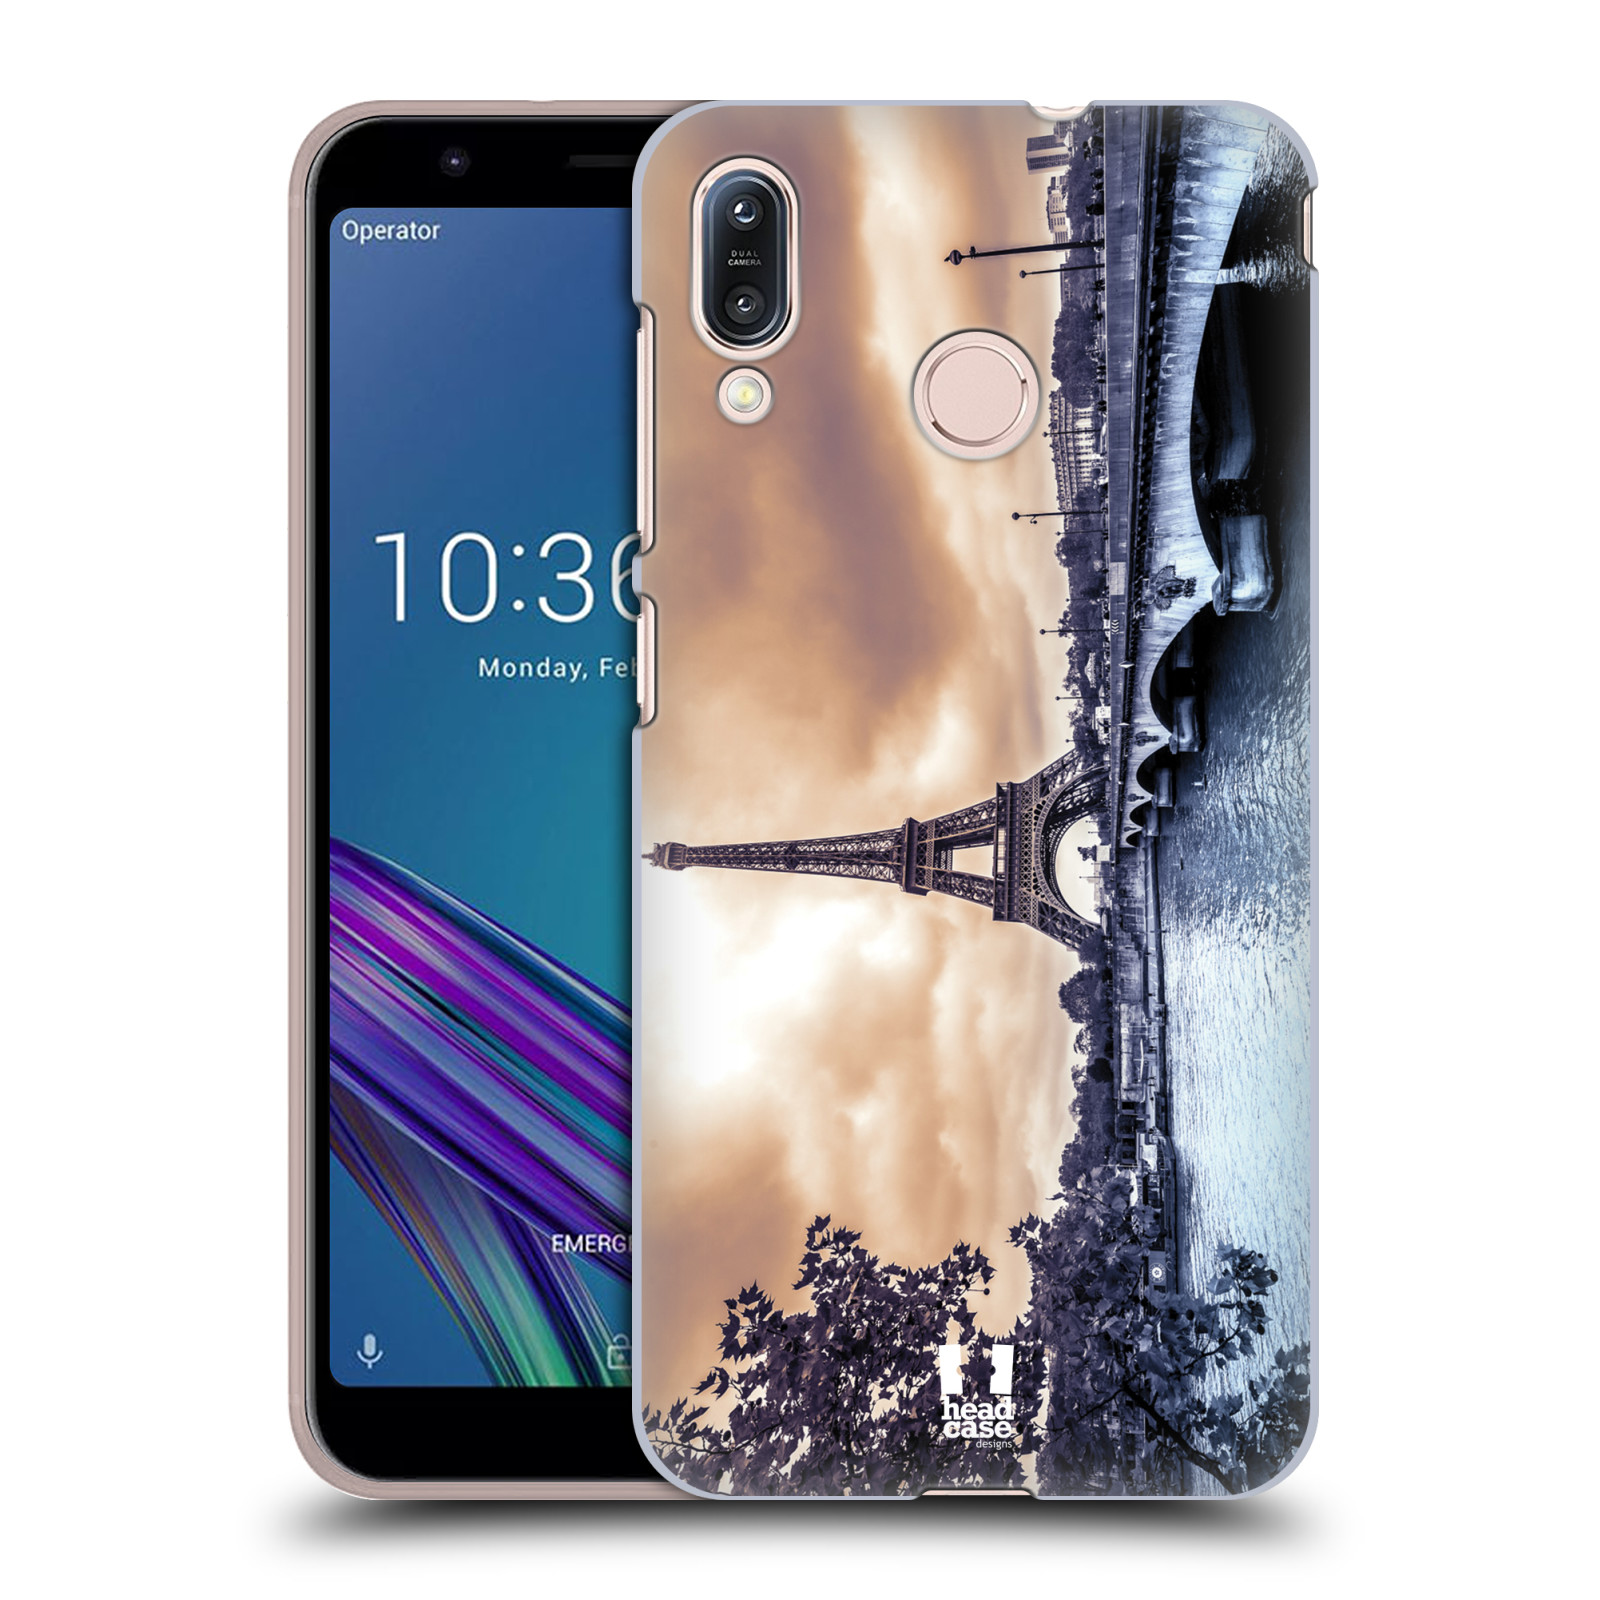 Pouzdro na mobil Asus Zenfone Max M1 (ZB555KL) - HEAD CASE - vzor Panoramata měst horizontální foto DEŠTIVÝ DEN V PAŘÍŽI, FRANCIE